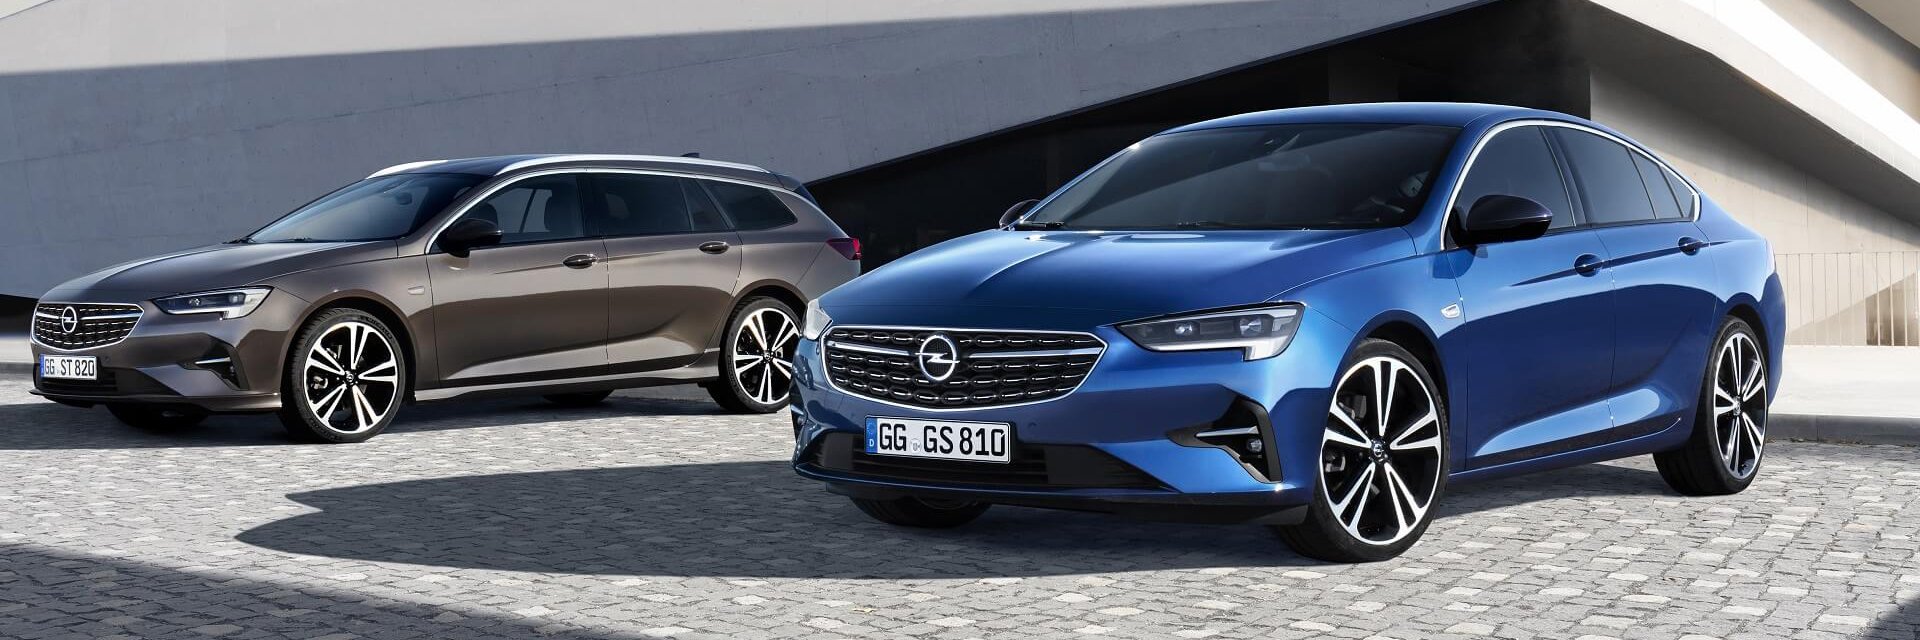 Opel Insignia, carros usados, carros novos, carros de serviço